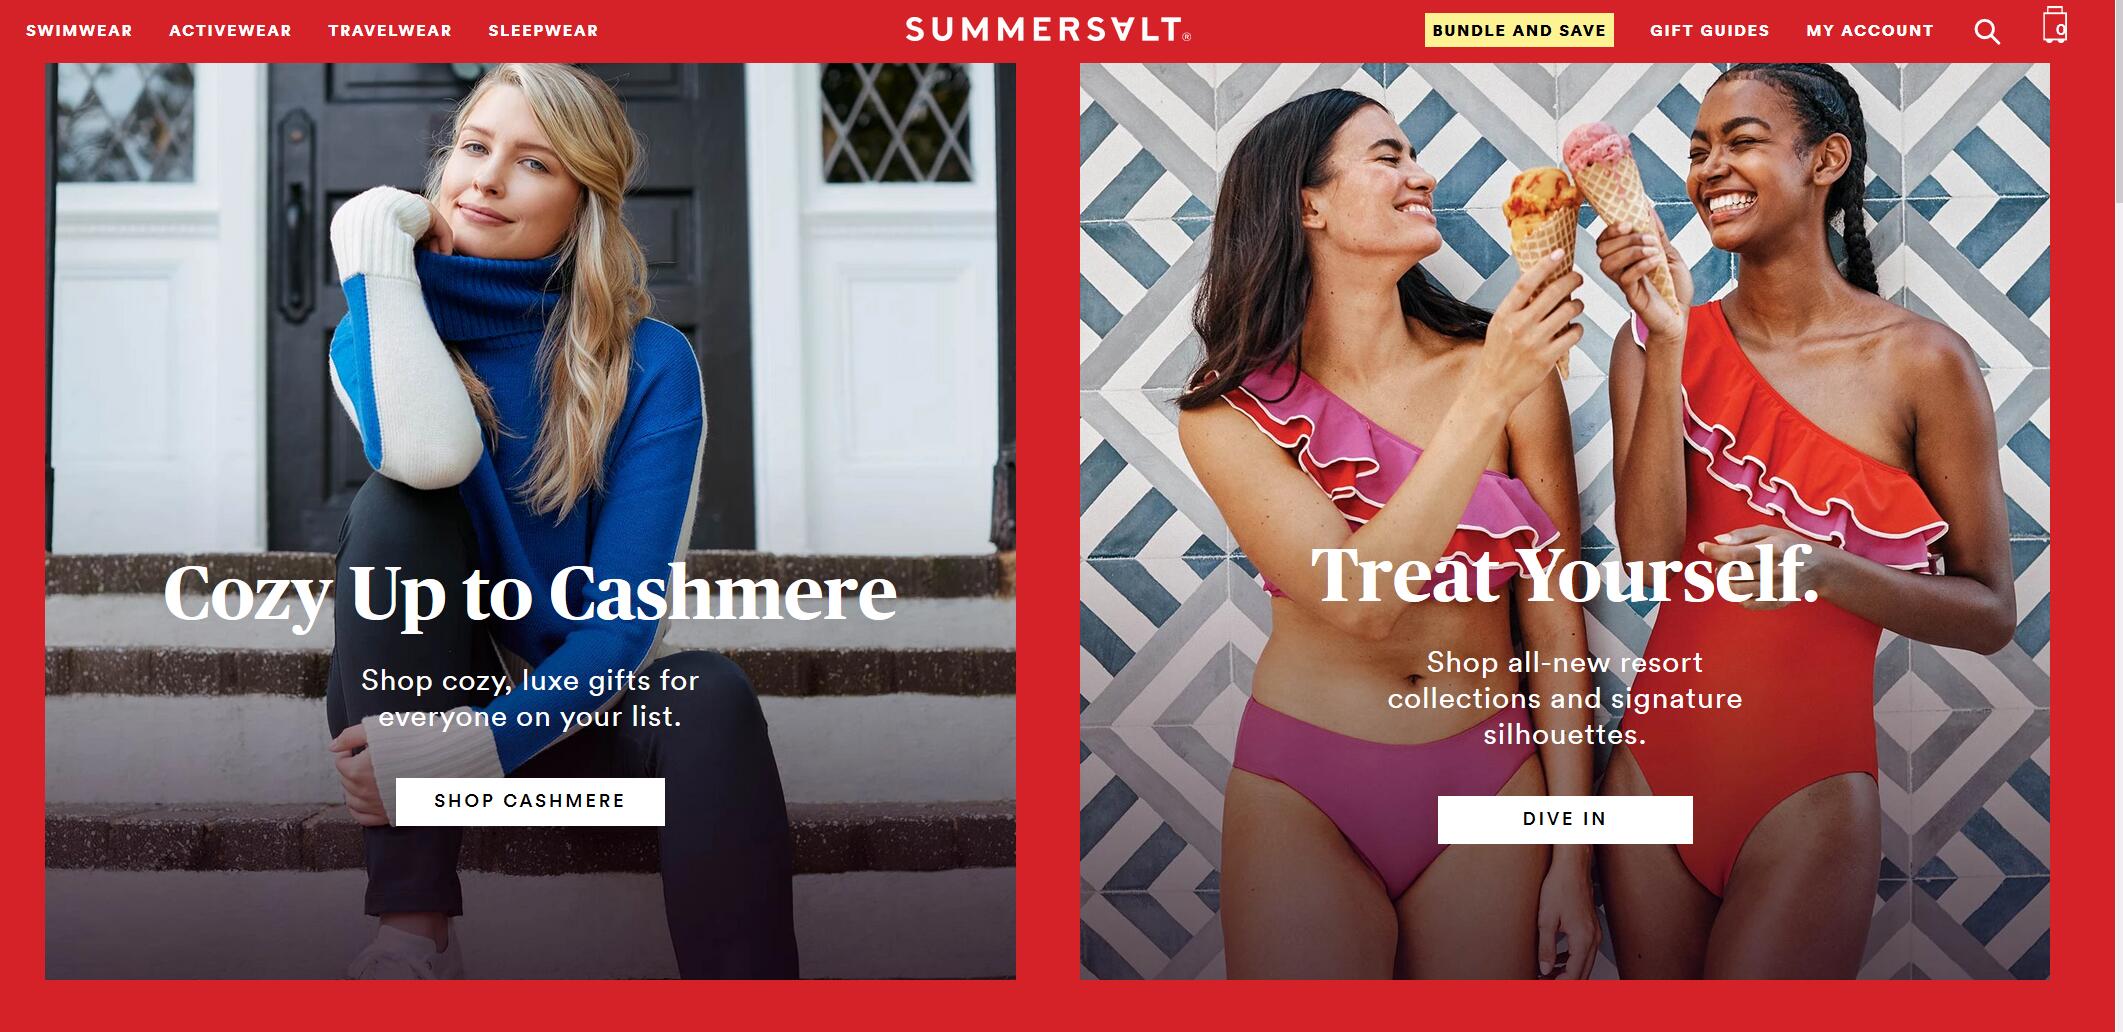 聚焦女性旅行群体，泳装起家的互联网生活方式品牌 Summersalt 完成1730万美元融资